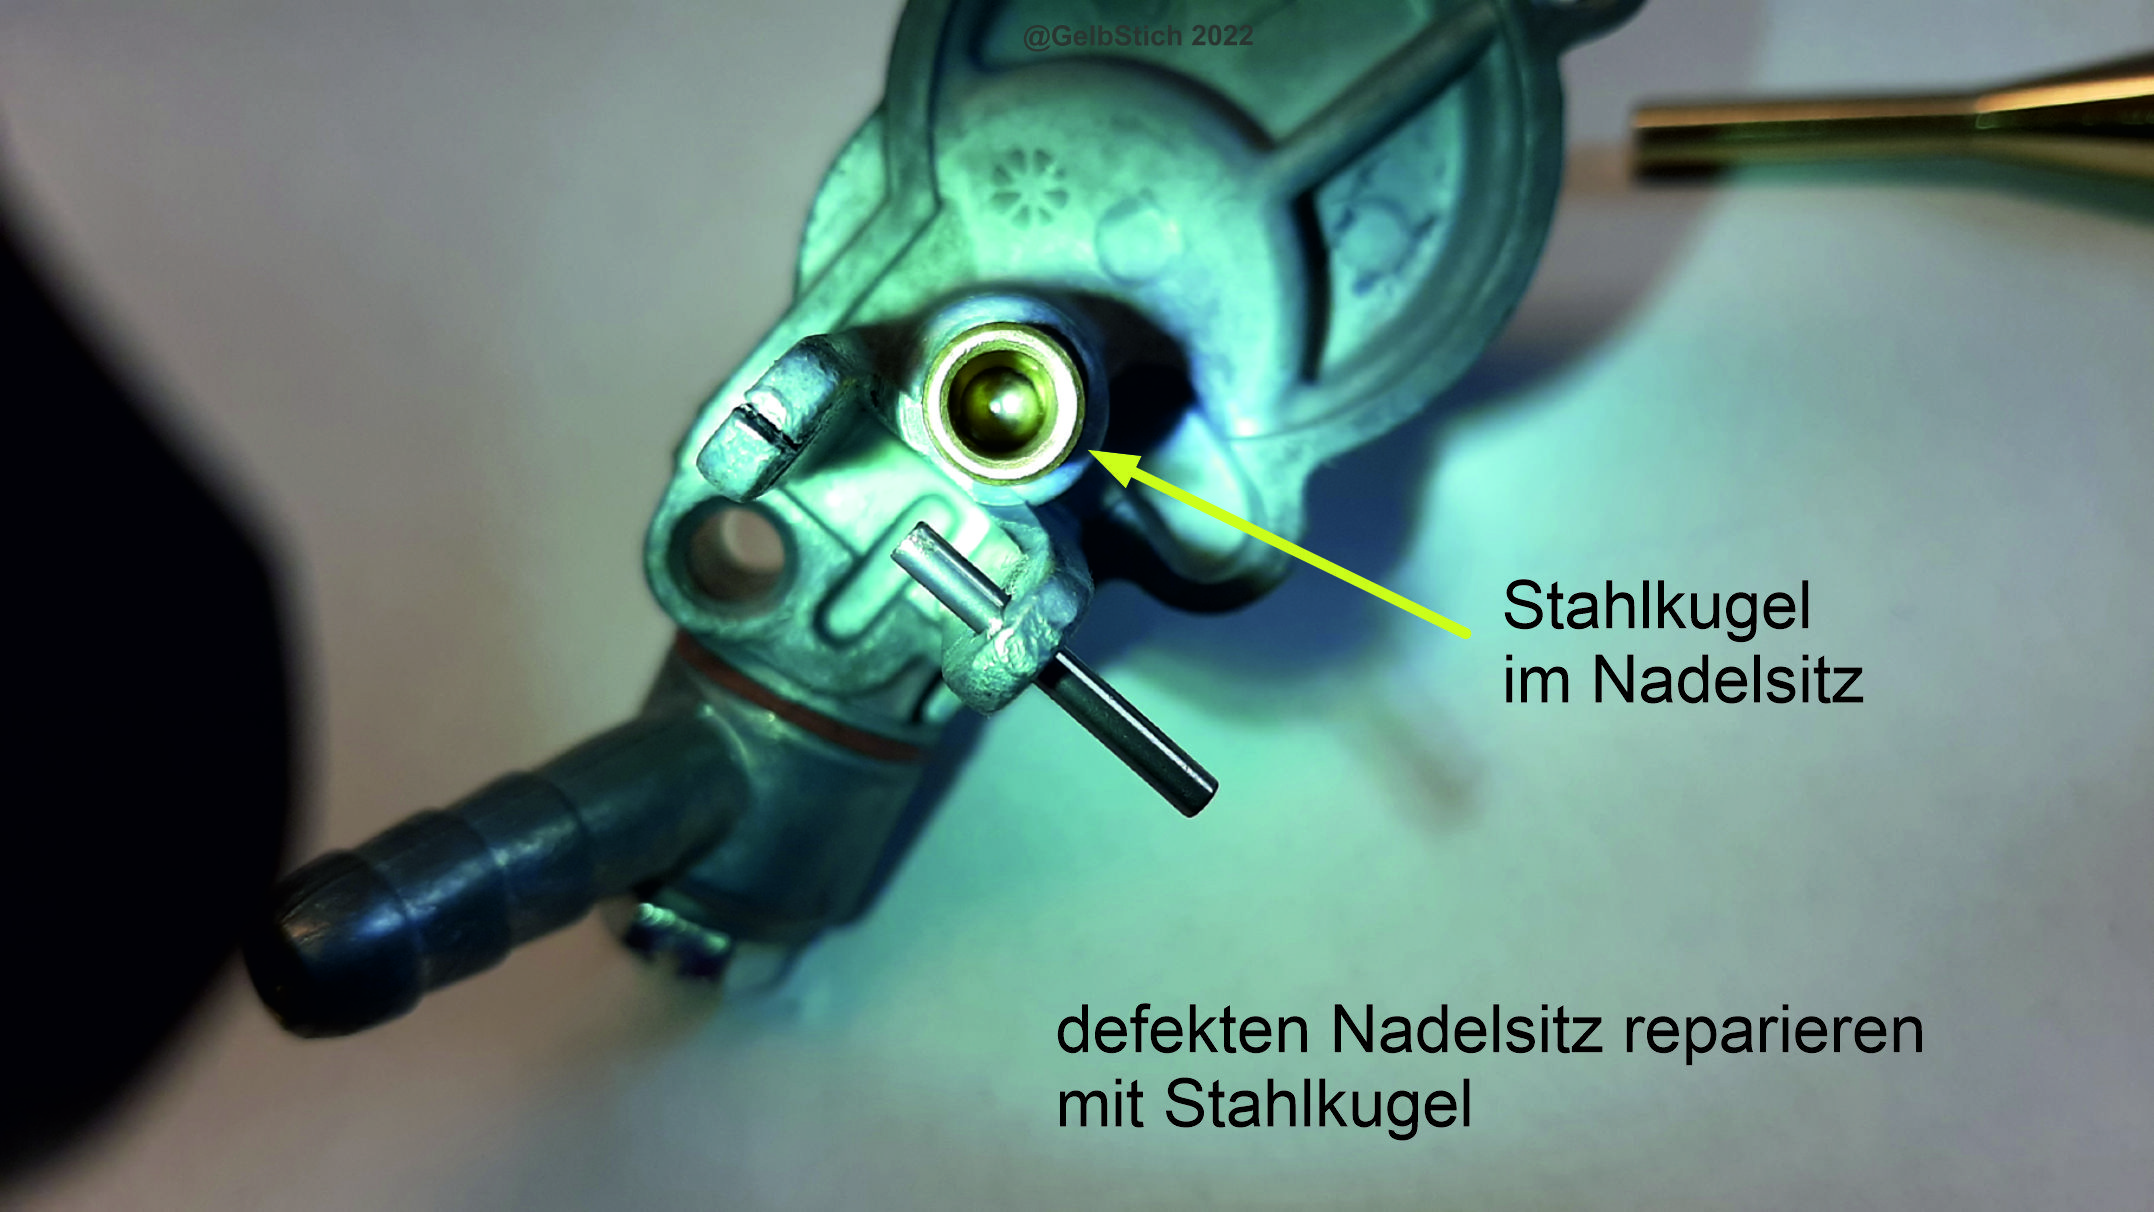 SI-Vergaser Stahlkugel im Nadelsitz.jpg